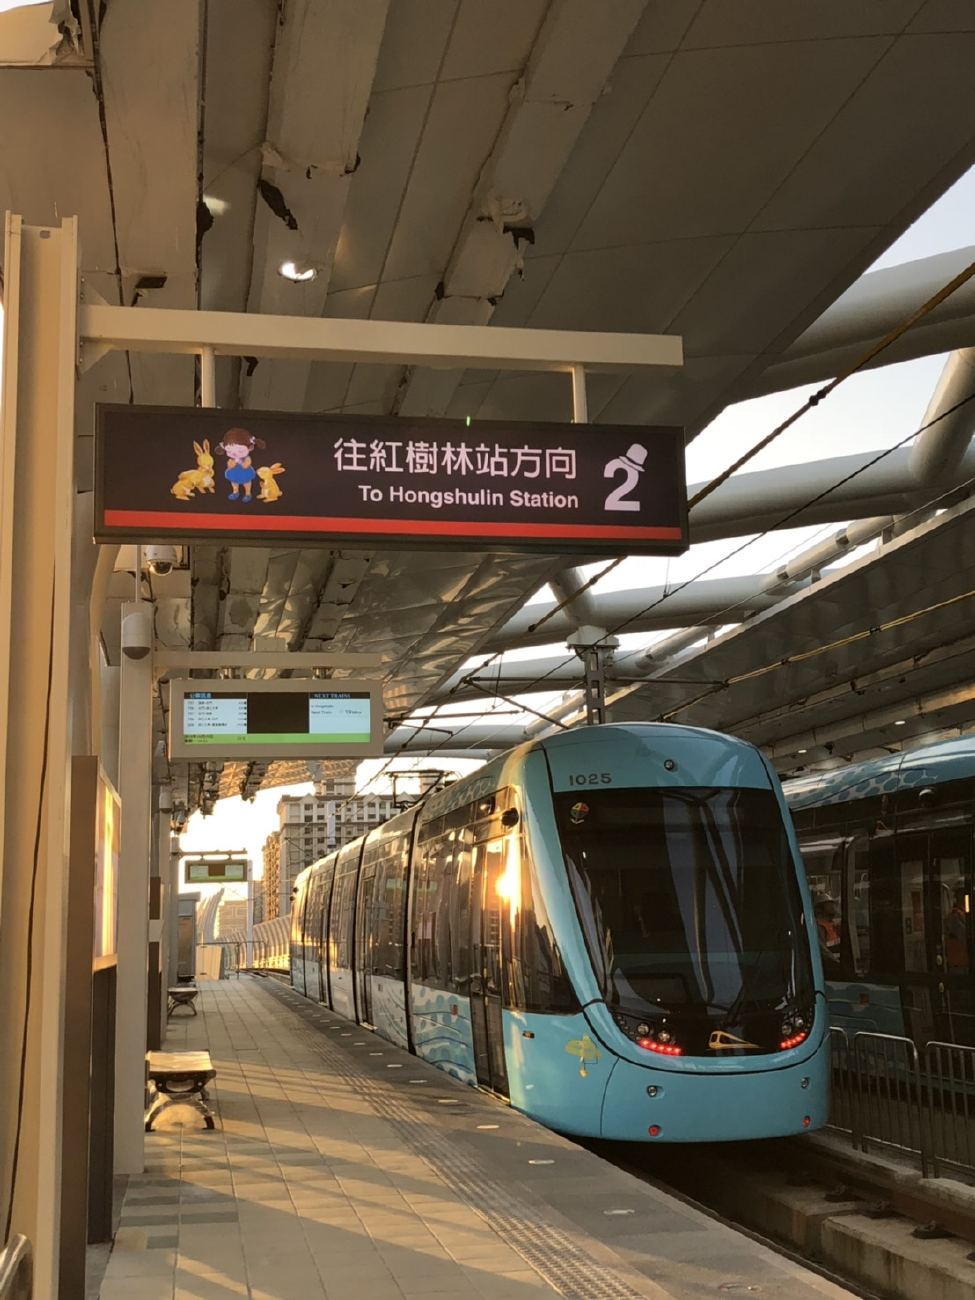 Taipei, Xingwuzhe 行武者号 č. 102; Taipei — Tram lines: V — Danhai light rail（淡海輕軌）